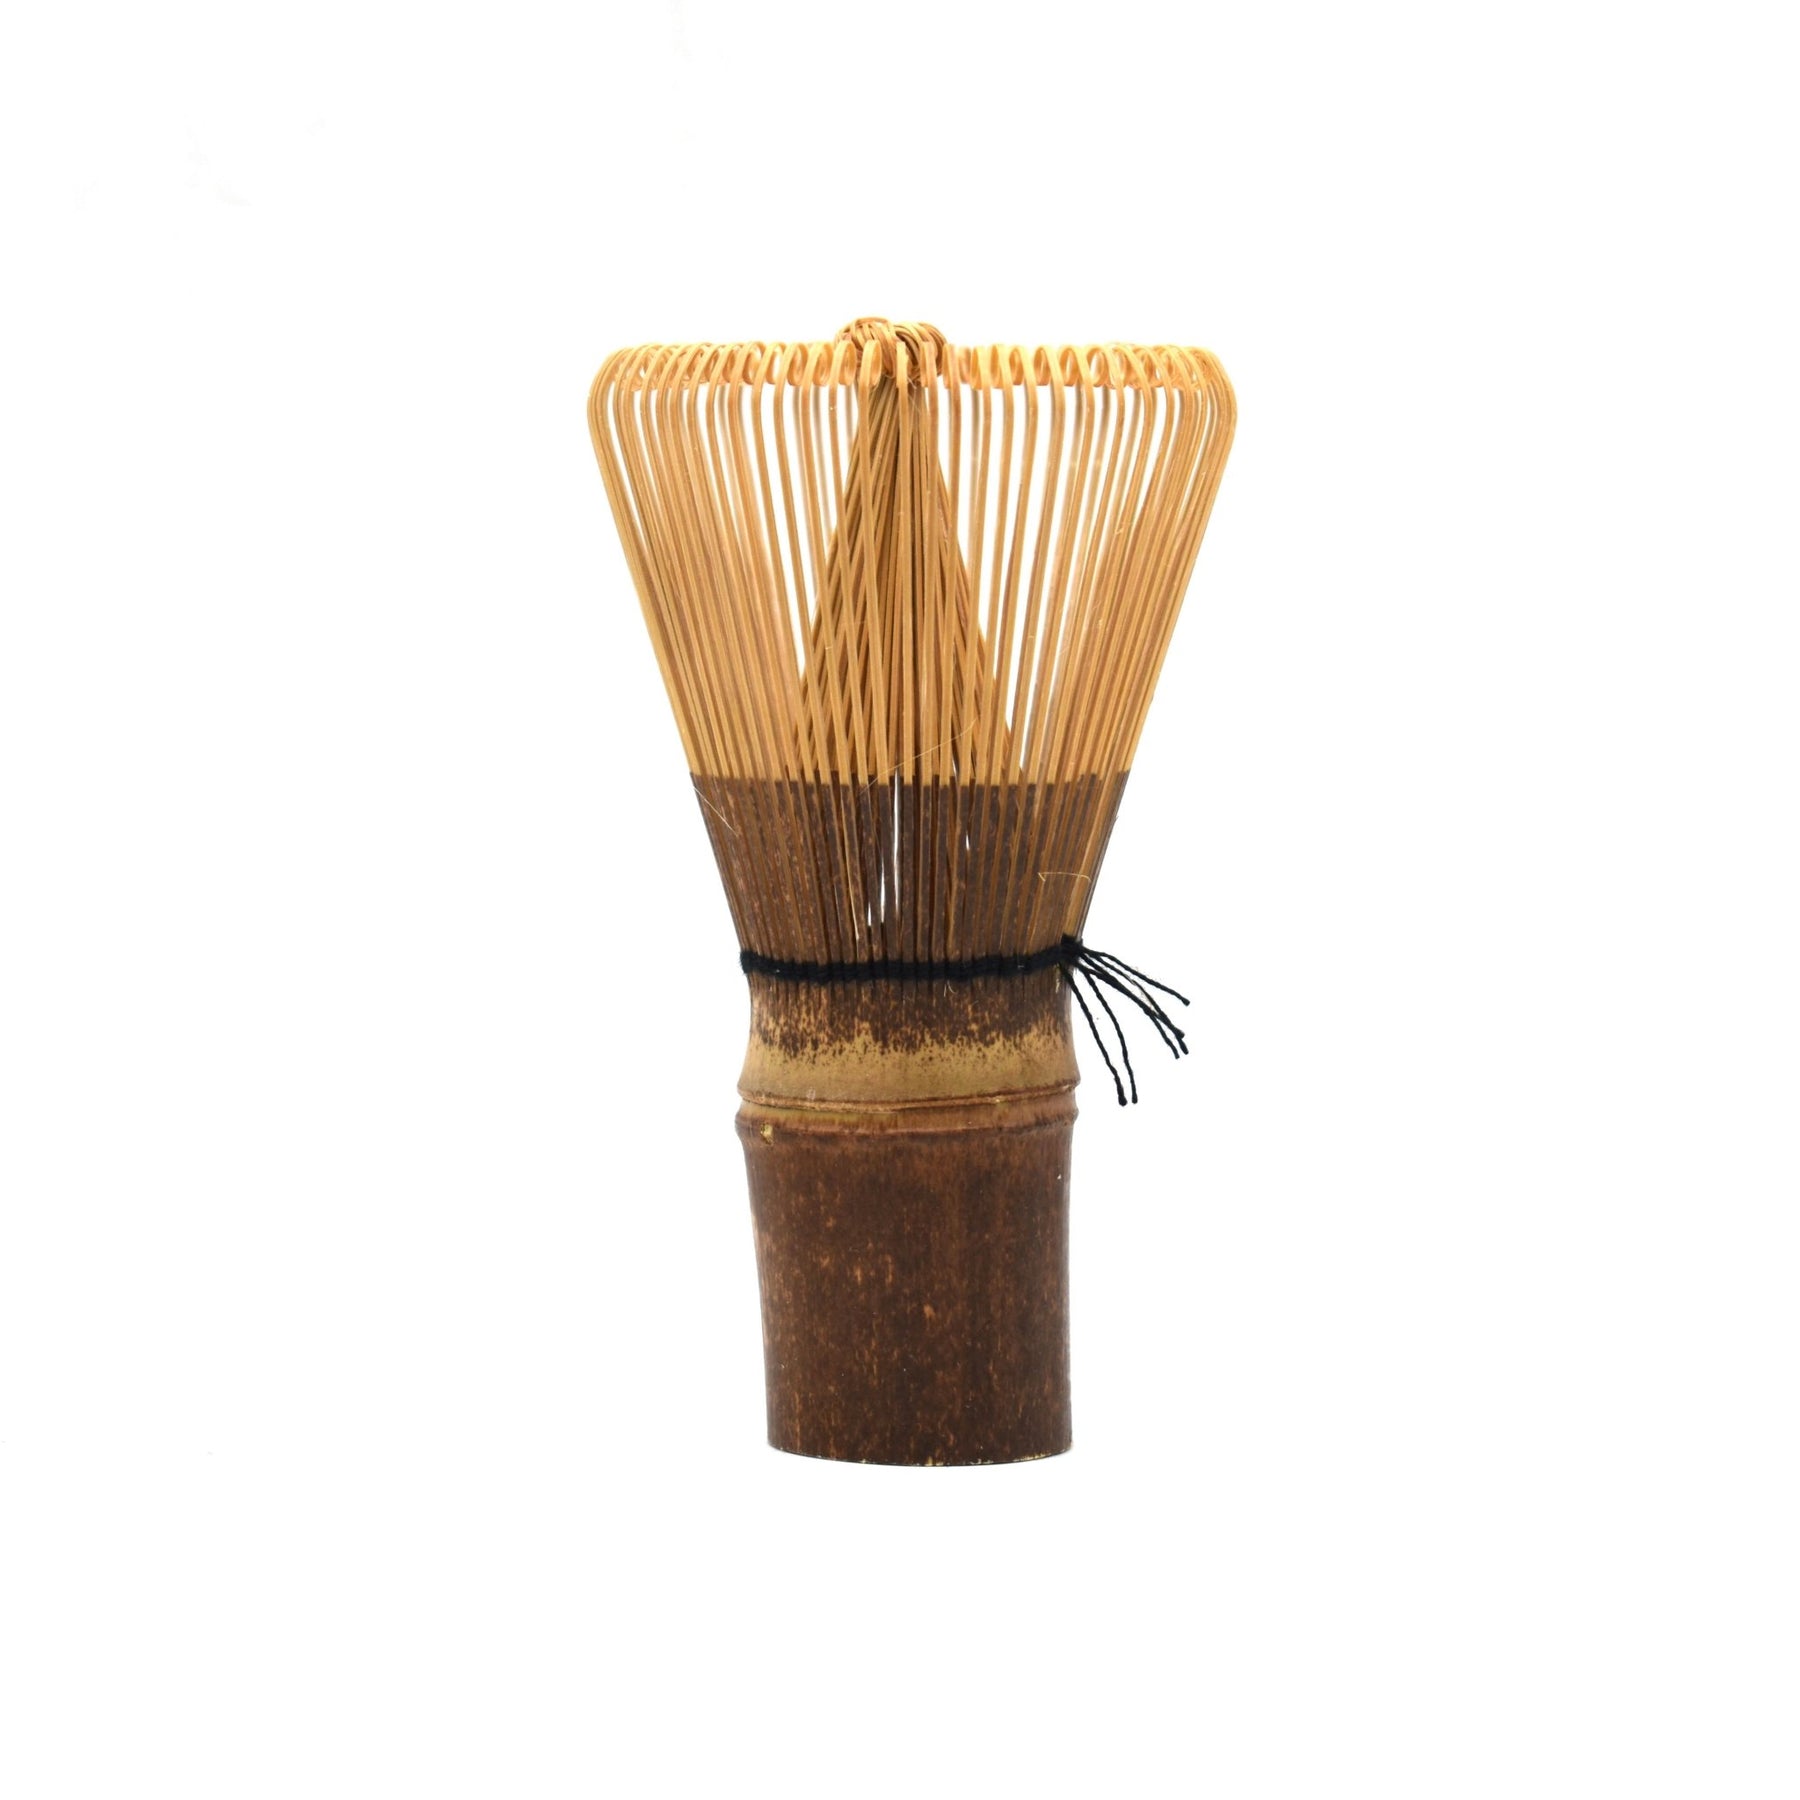 Natural Bamboo Matcha Tea Whisk - Long